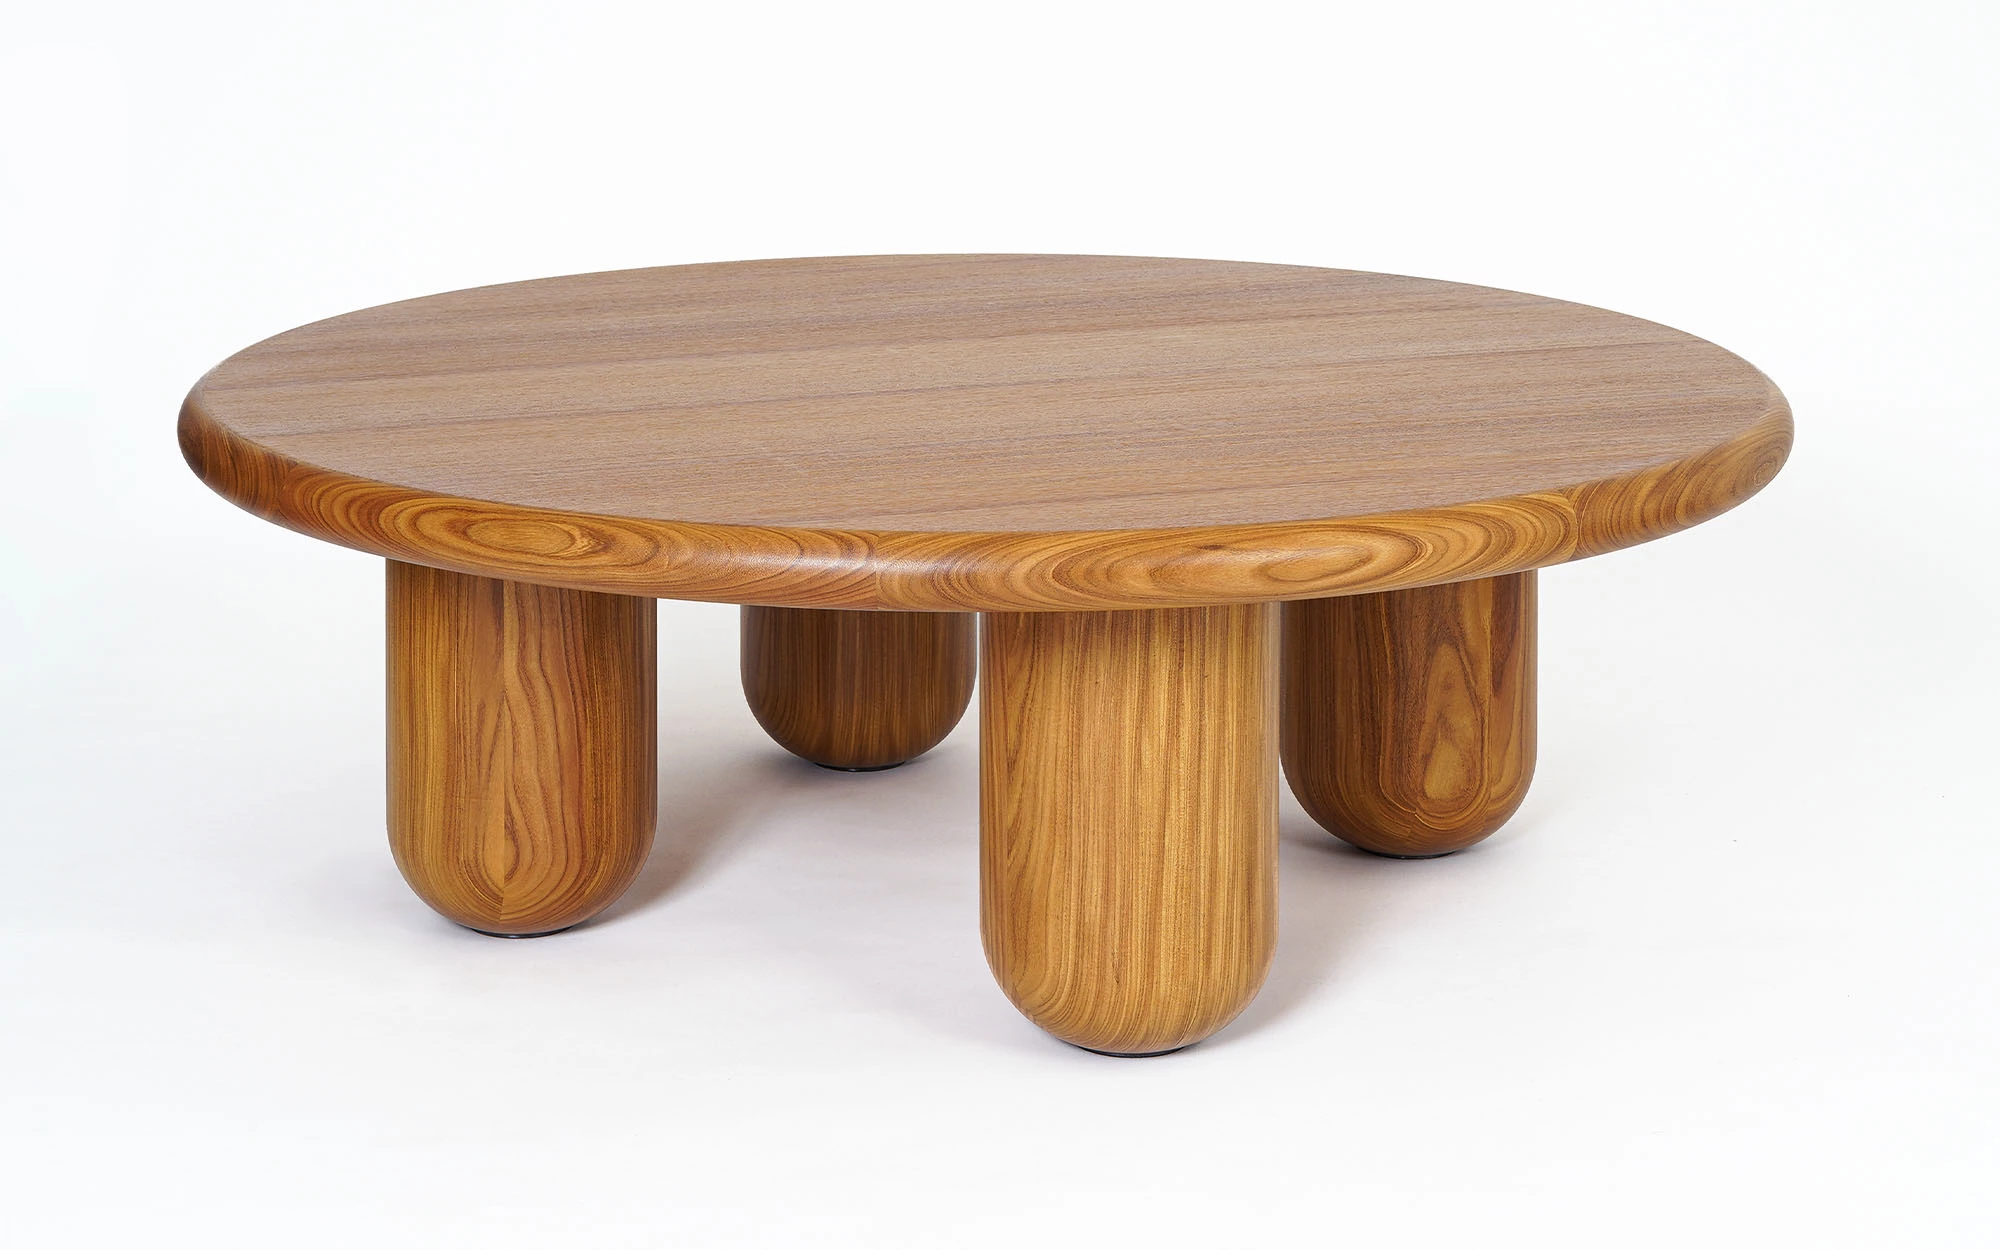 Organism coffee table - Jaime Hayon - Table - Galerie kreo